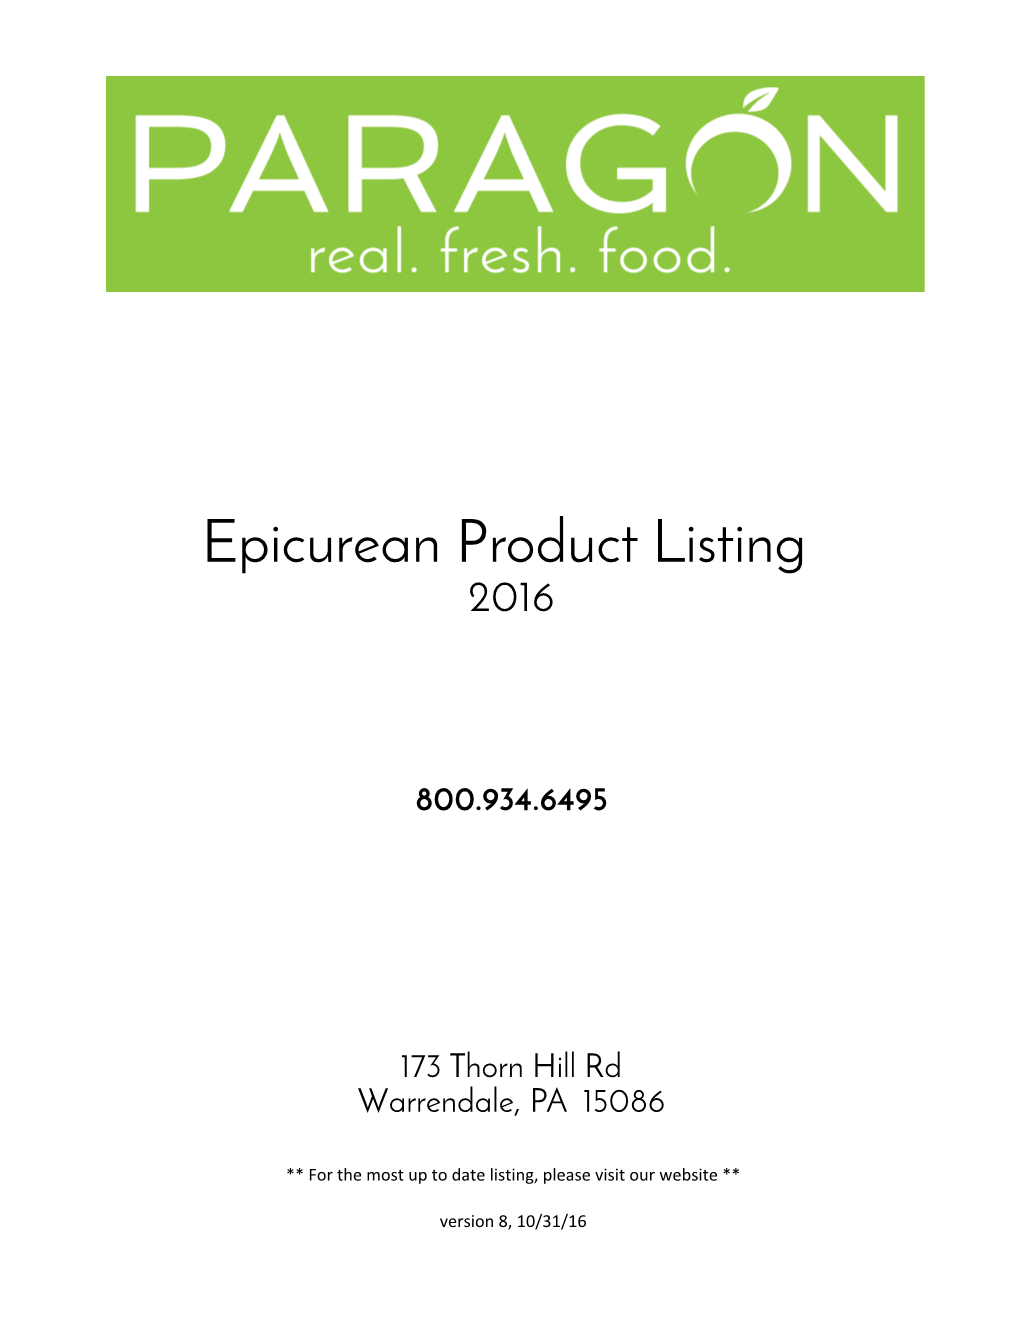 Epicurean Product Listing 2016